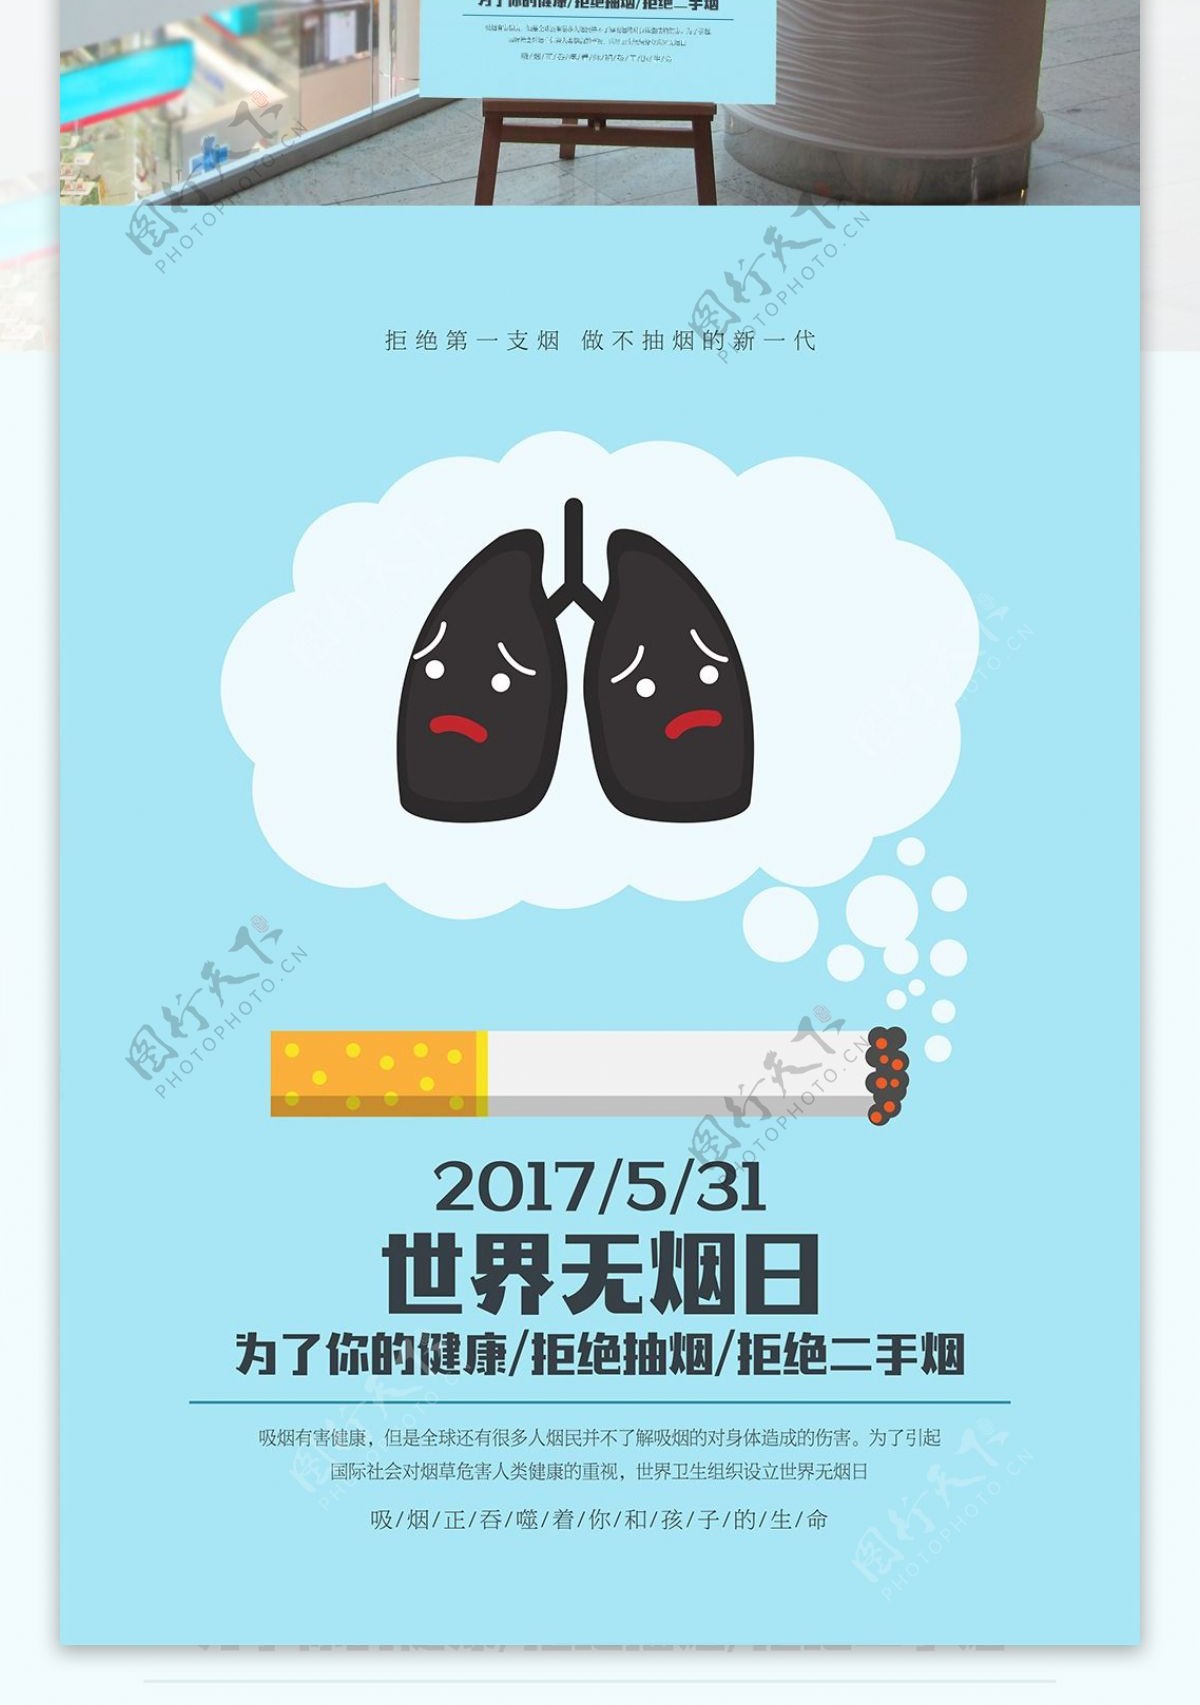 世界无烟日创意海报设计